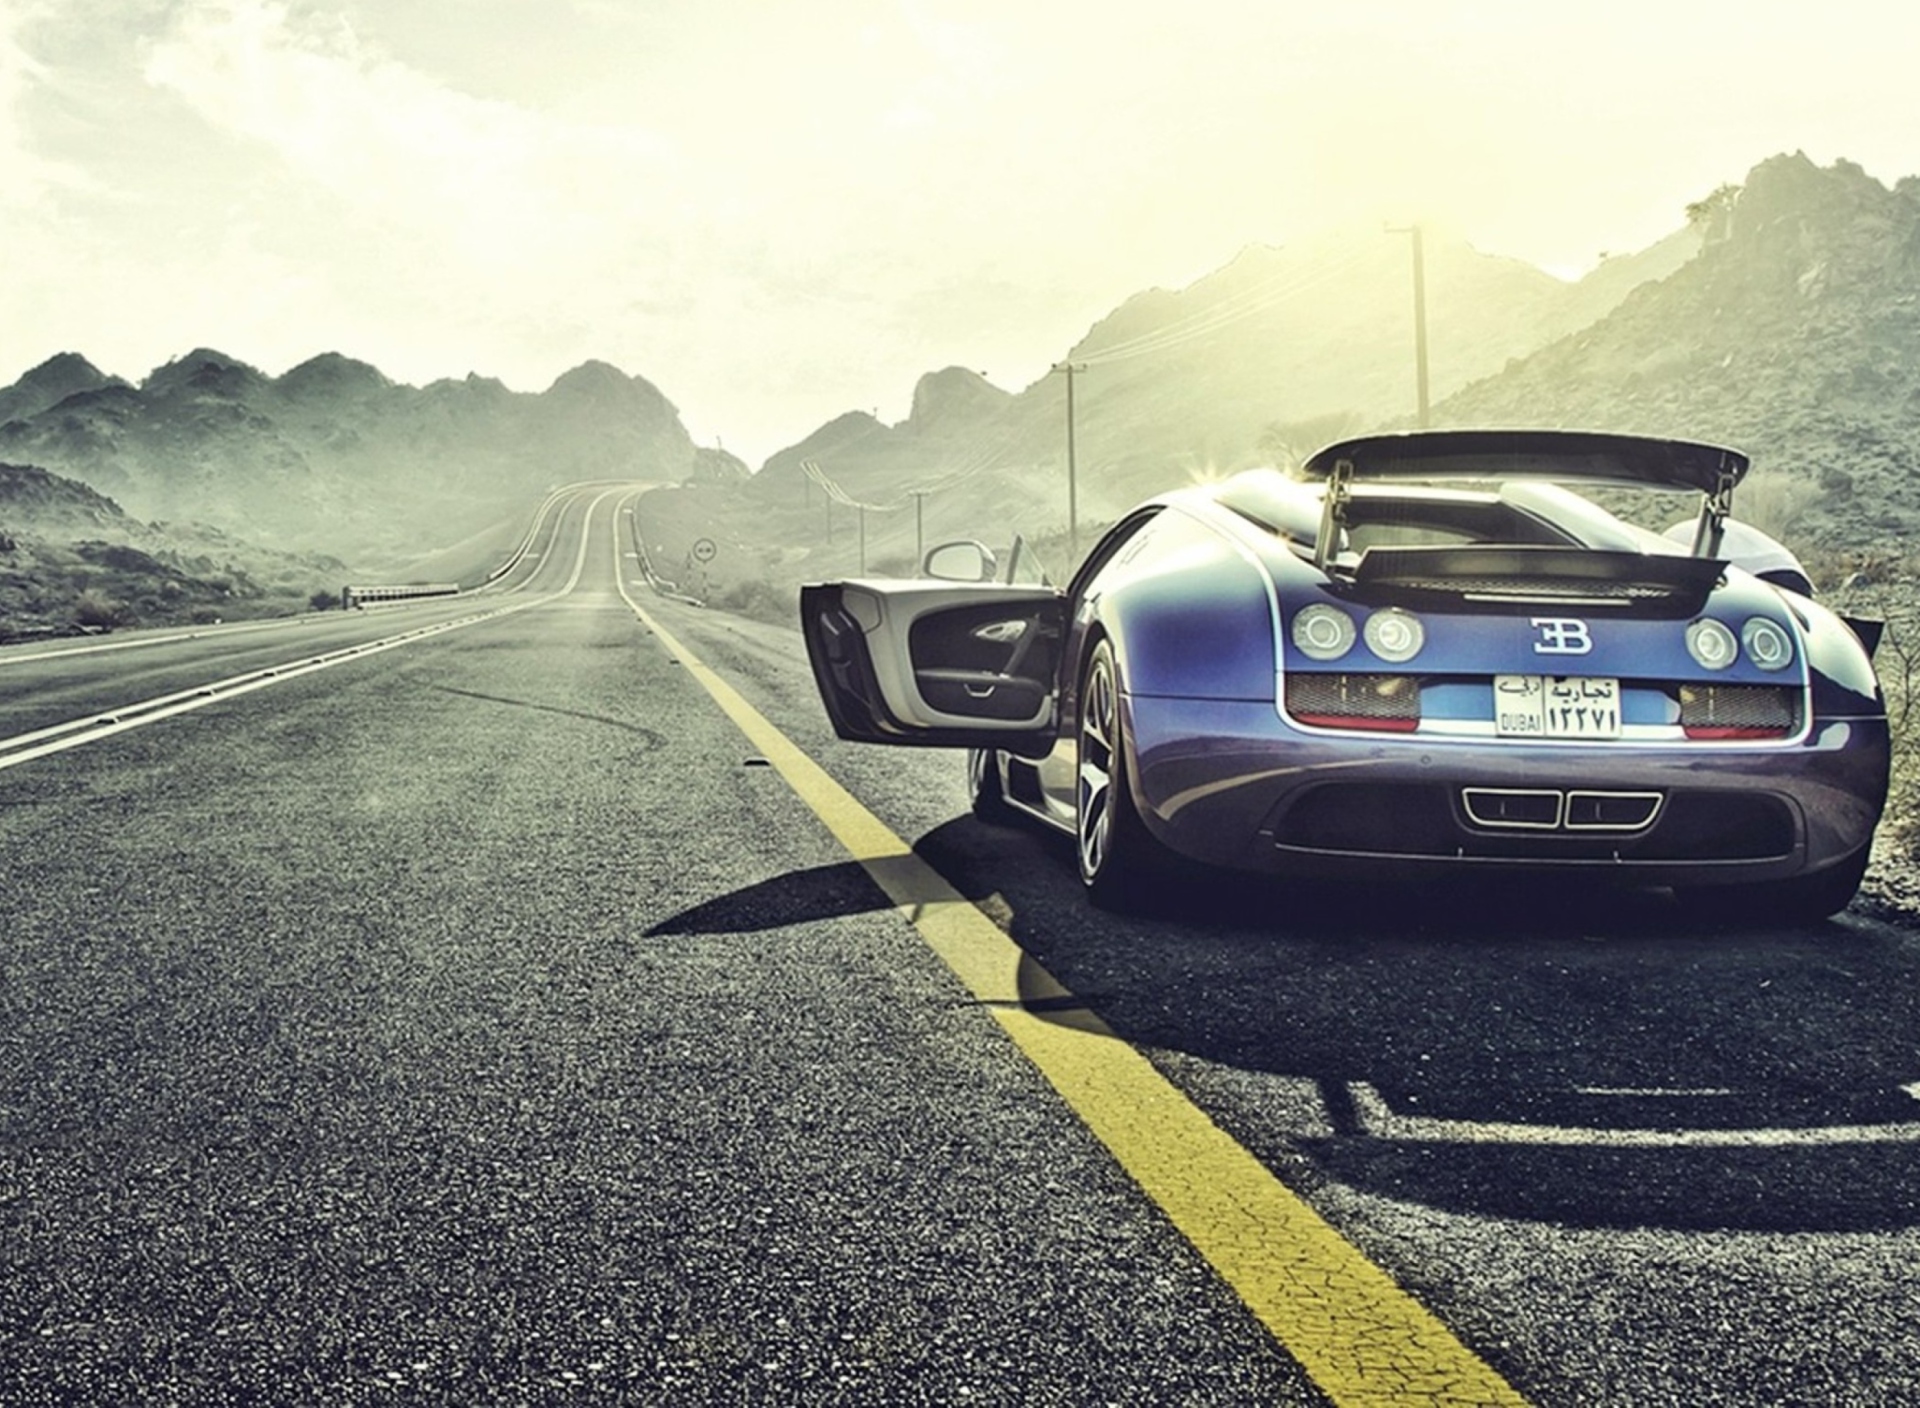 Sfondi Bugatti from UAE Boutique 1920x1408